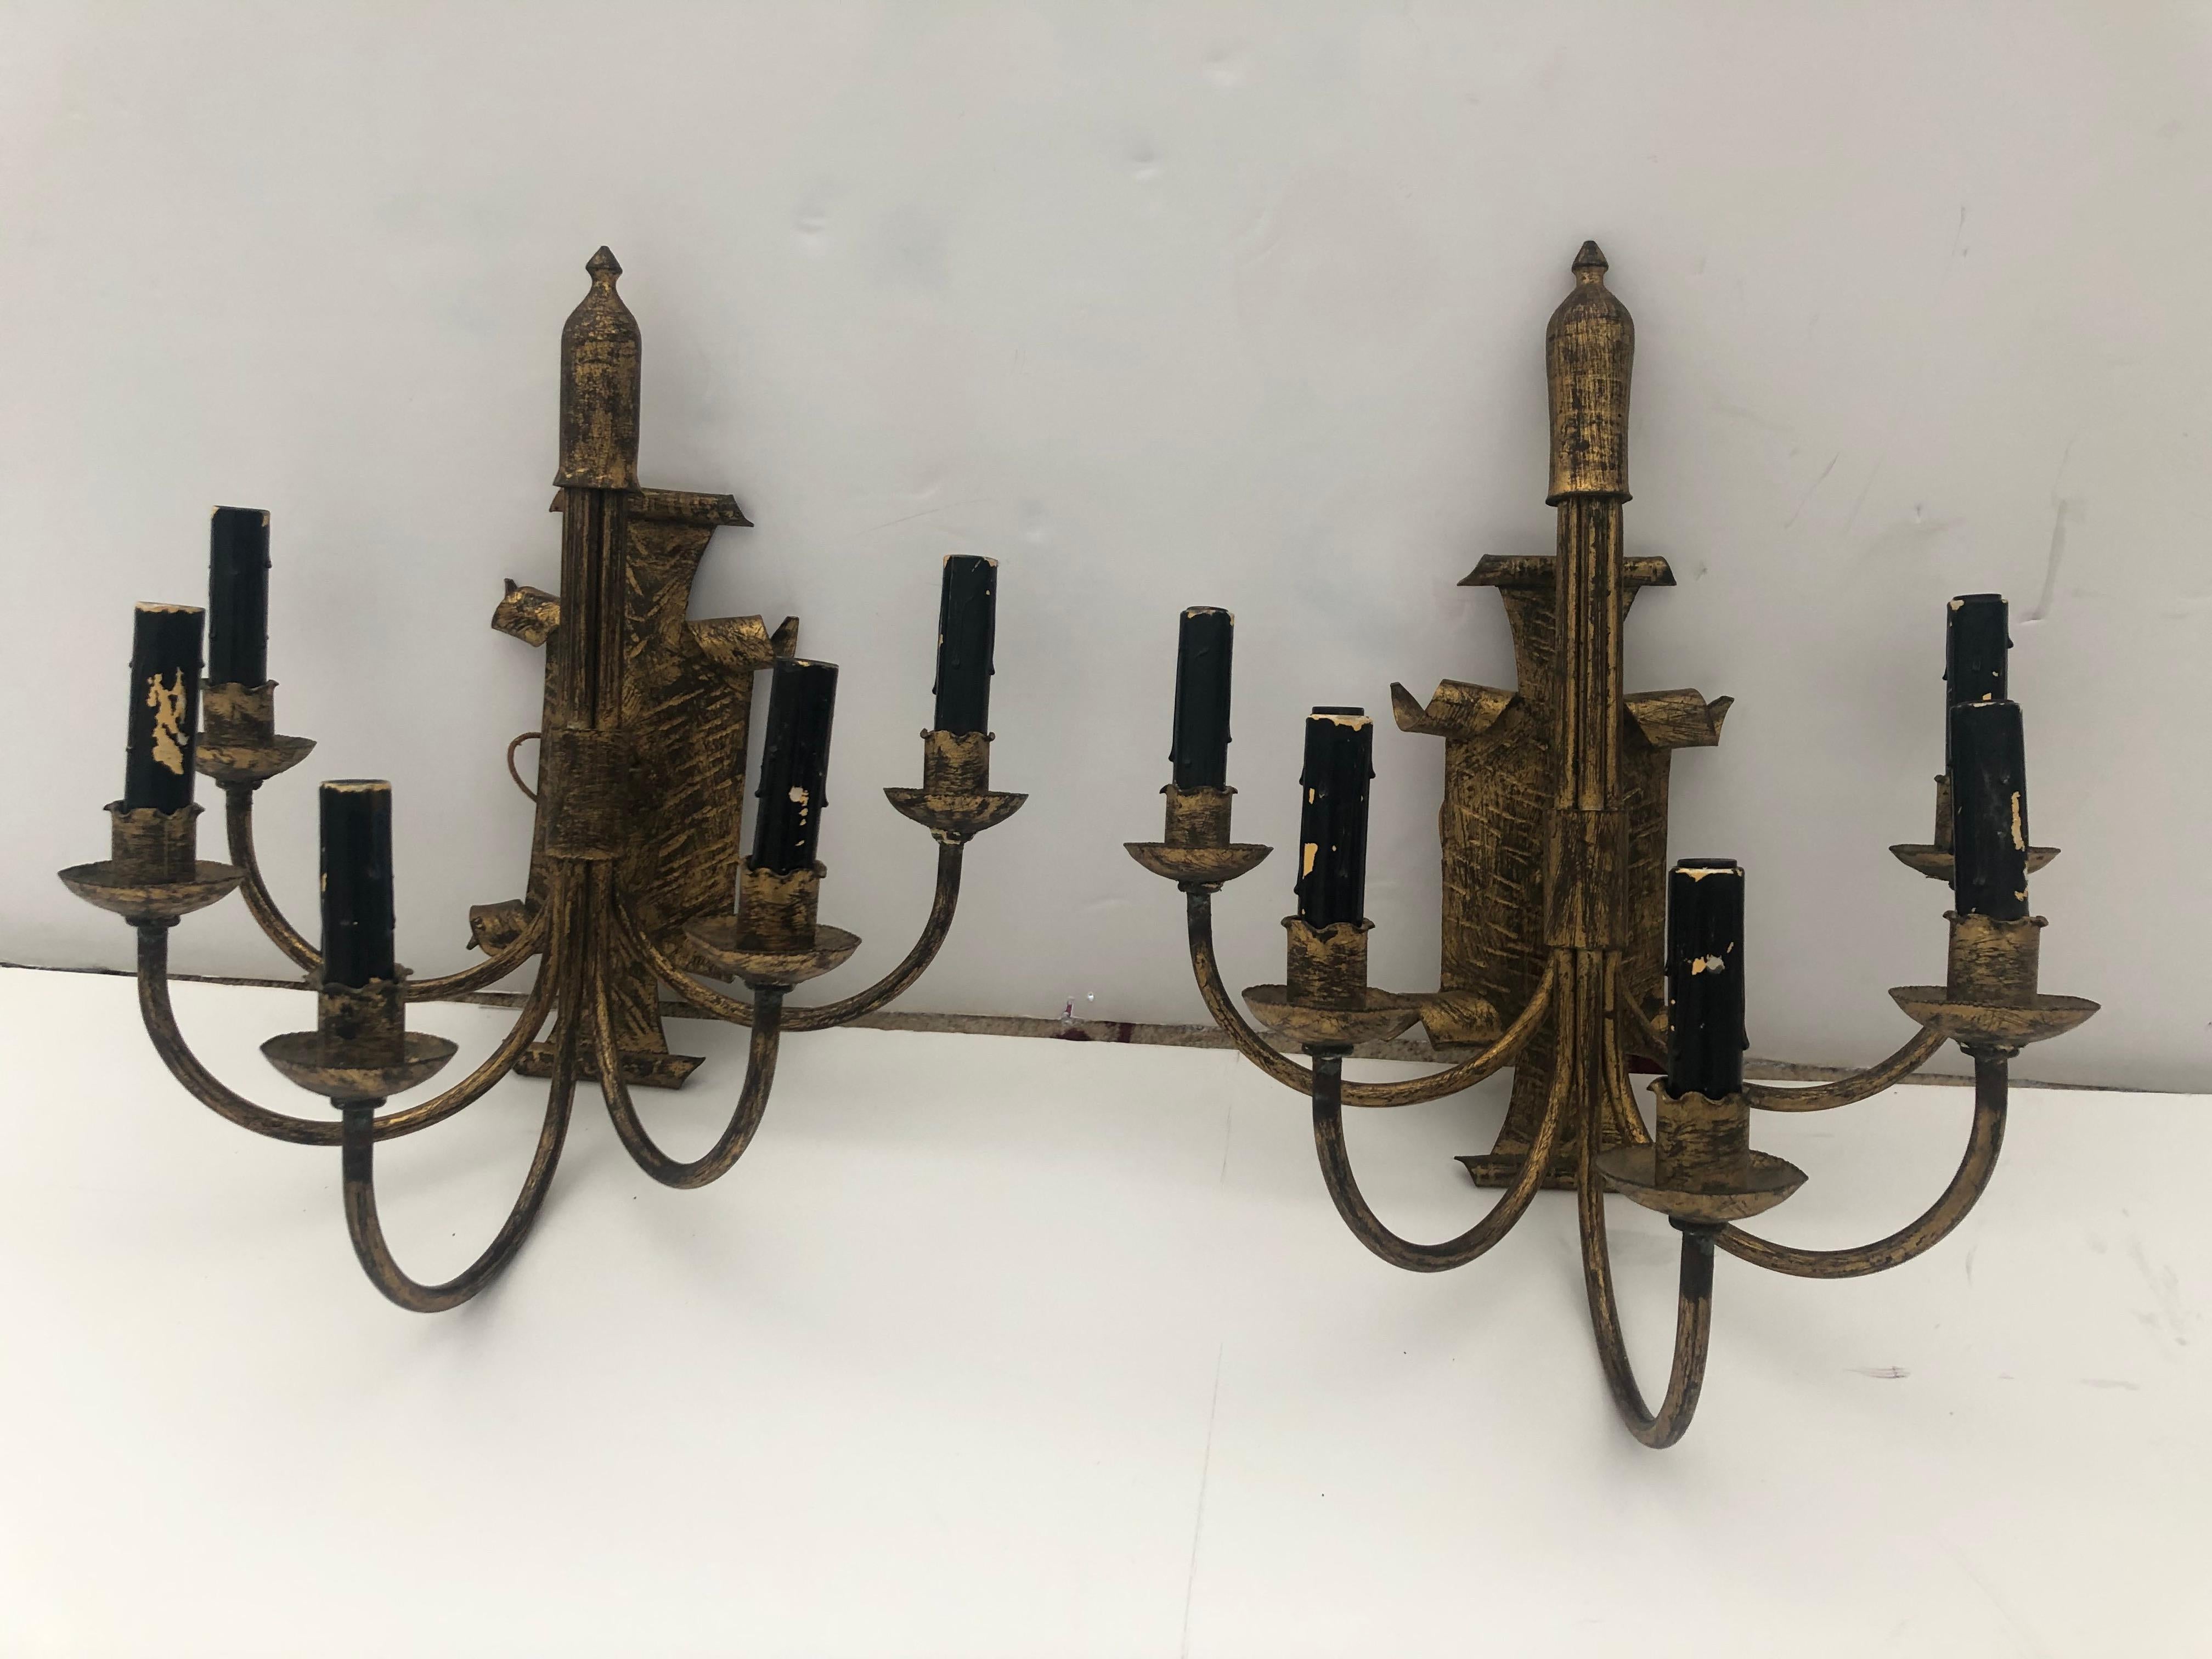 Ungewöhnliches und auffallendes Paar hübscher 5-armiger elektrifizierter Kerzenleuchter aus Bronze und schwarz geriebenem Eisen mit Rückseiten im Schildstil und dekorativen königlichen Endstücken.